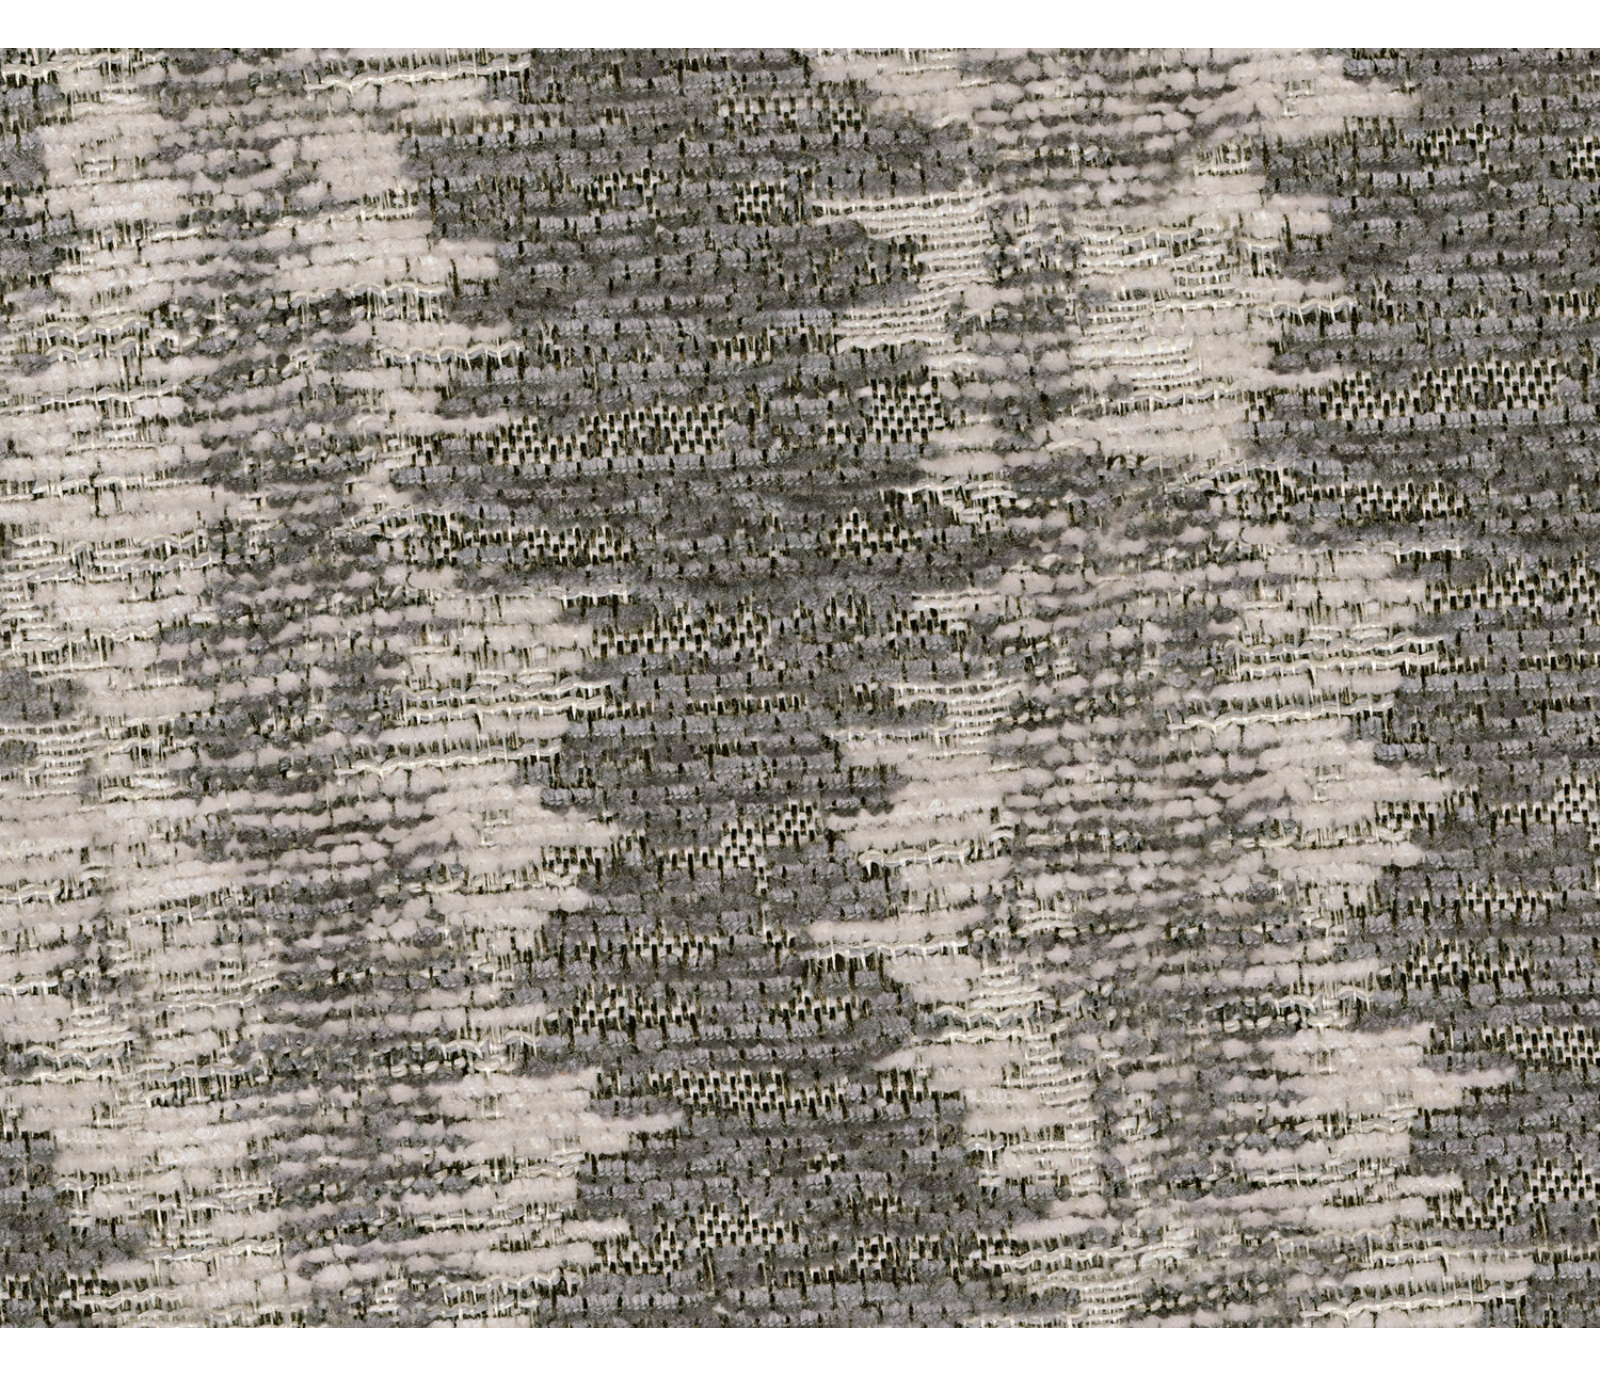 Bre Sofa - Flannel Fabric